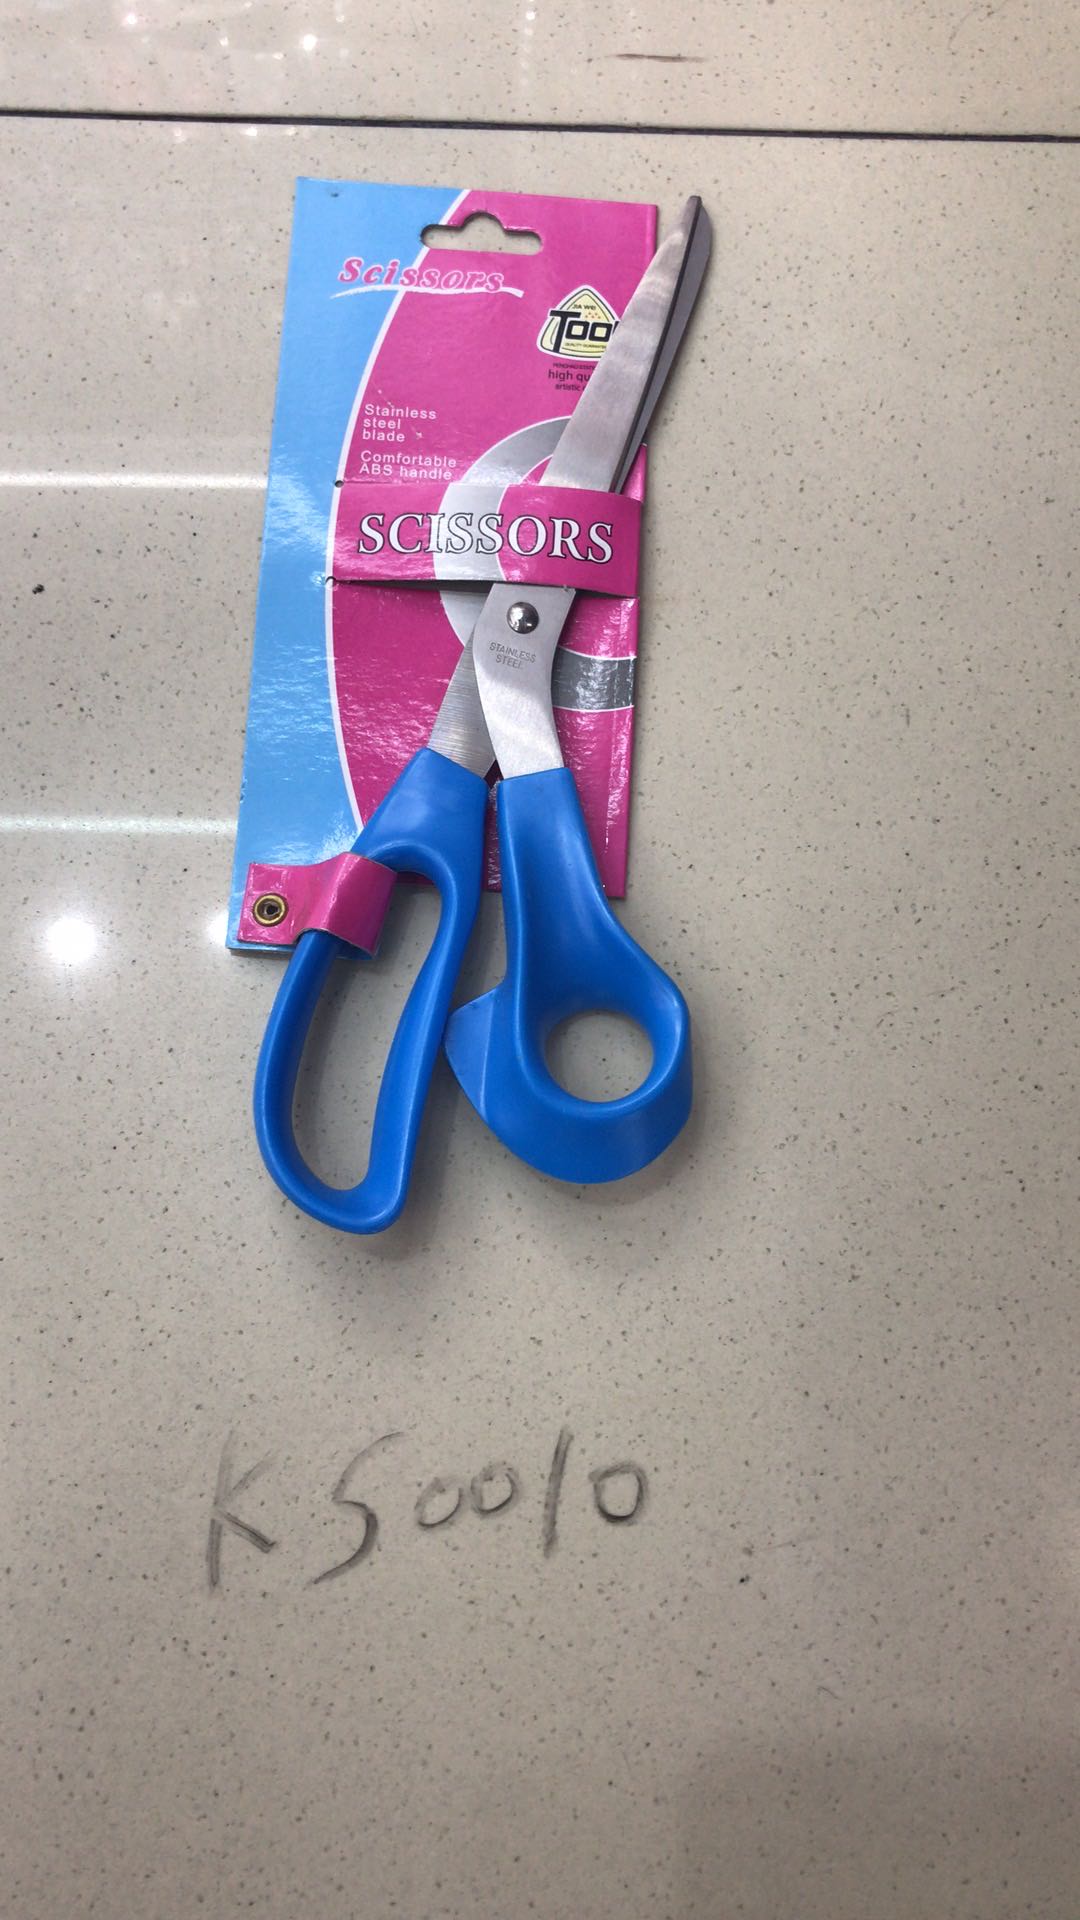 手工剪刀儿童安全不锈钢小剪刀圆头剪纸剪子学生家用小号便携式随身携带图